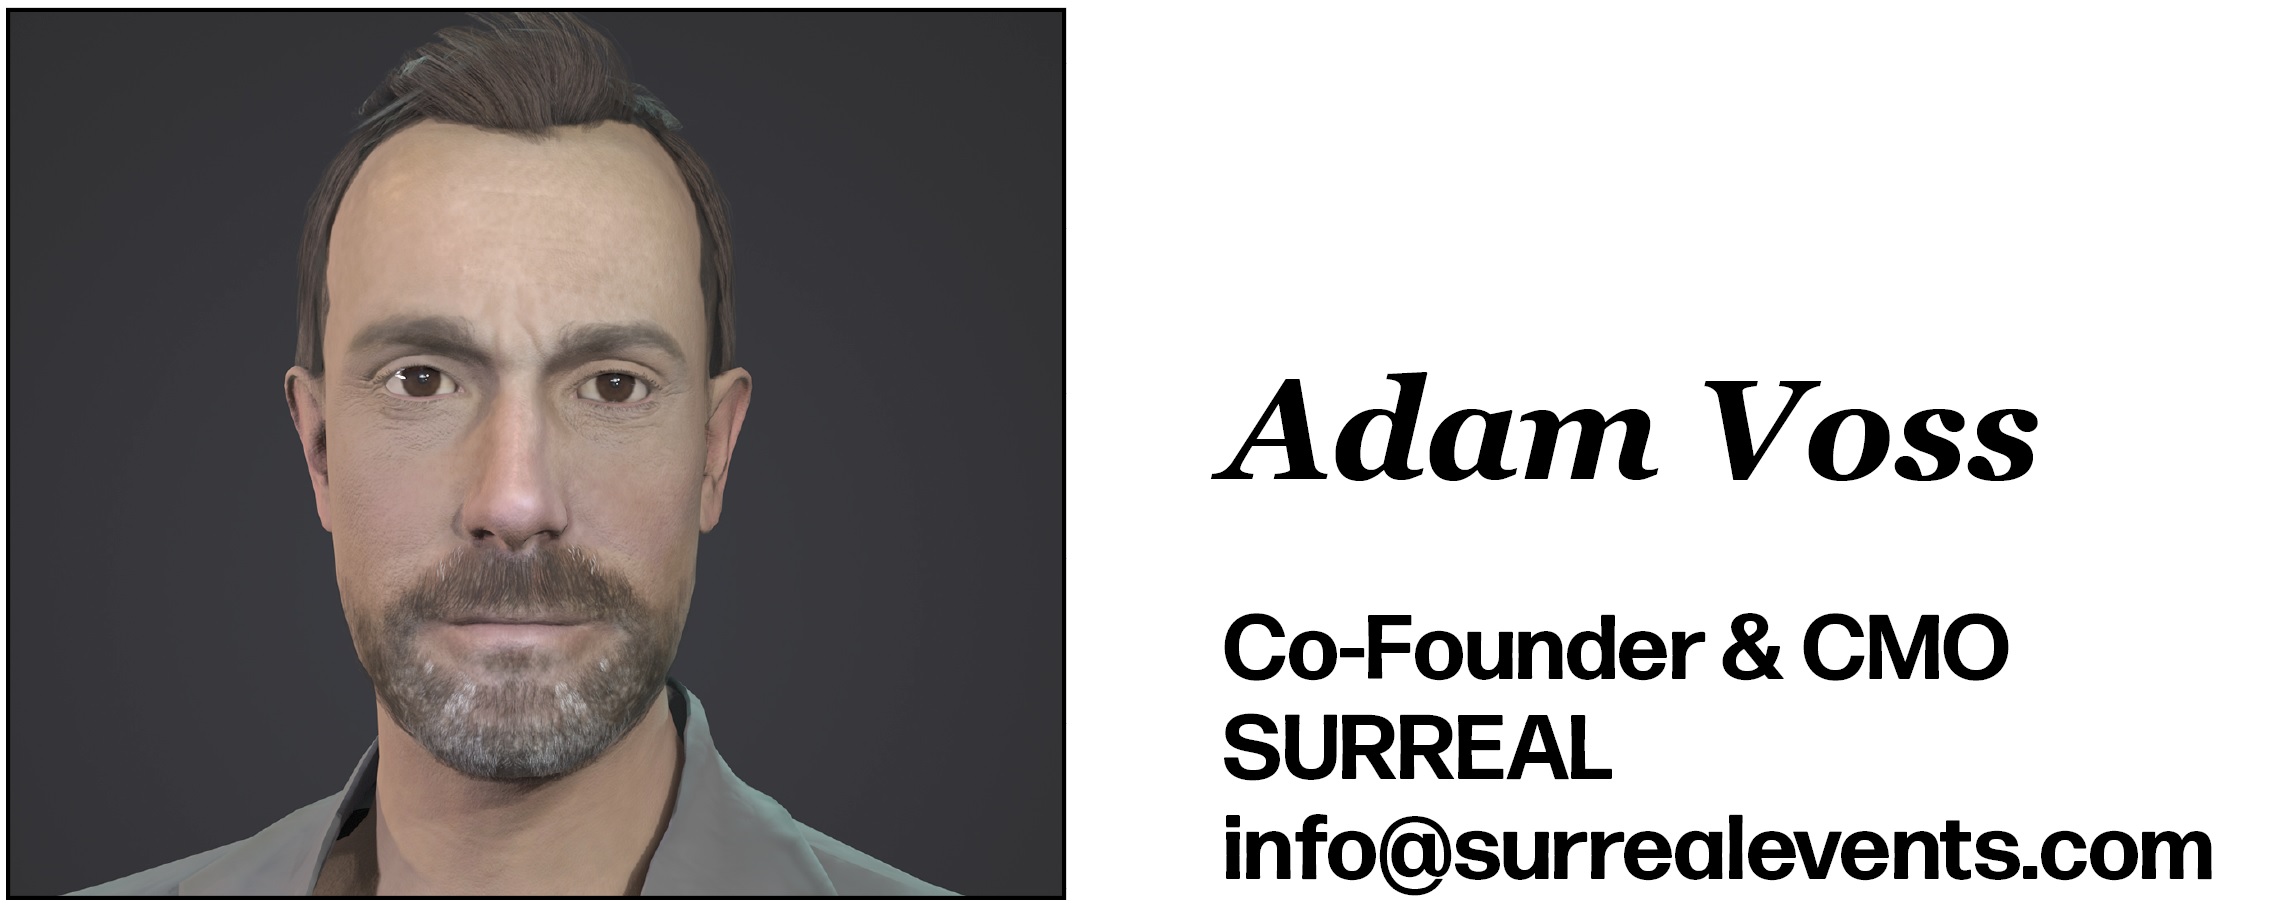 Adam Voss Co-Founder & CMO SURREAL info@surrealevents.com 